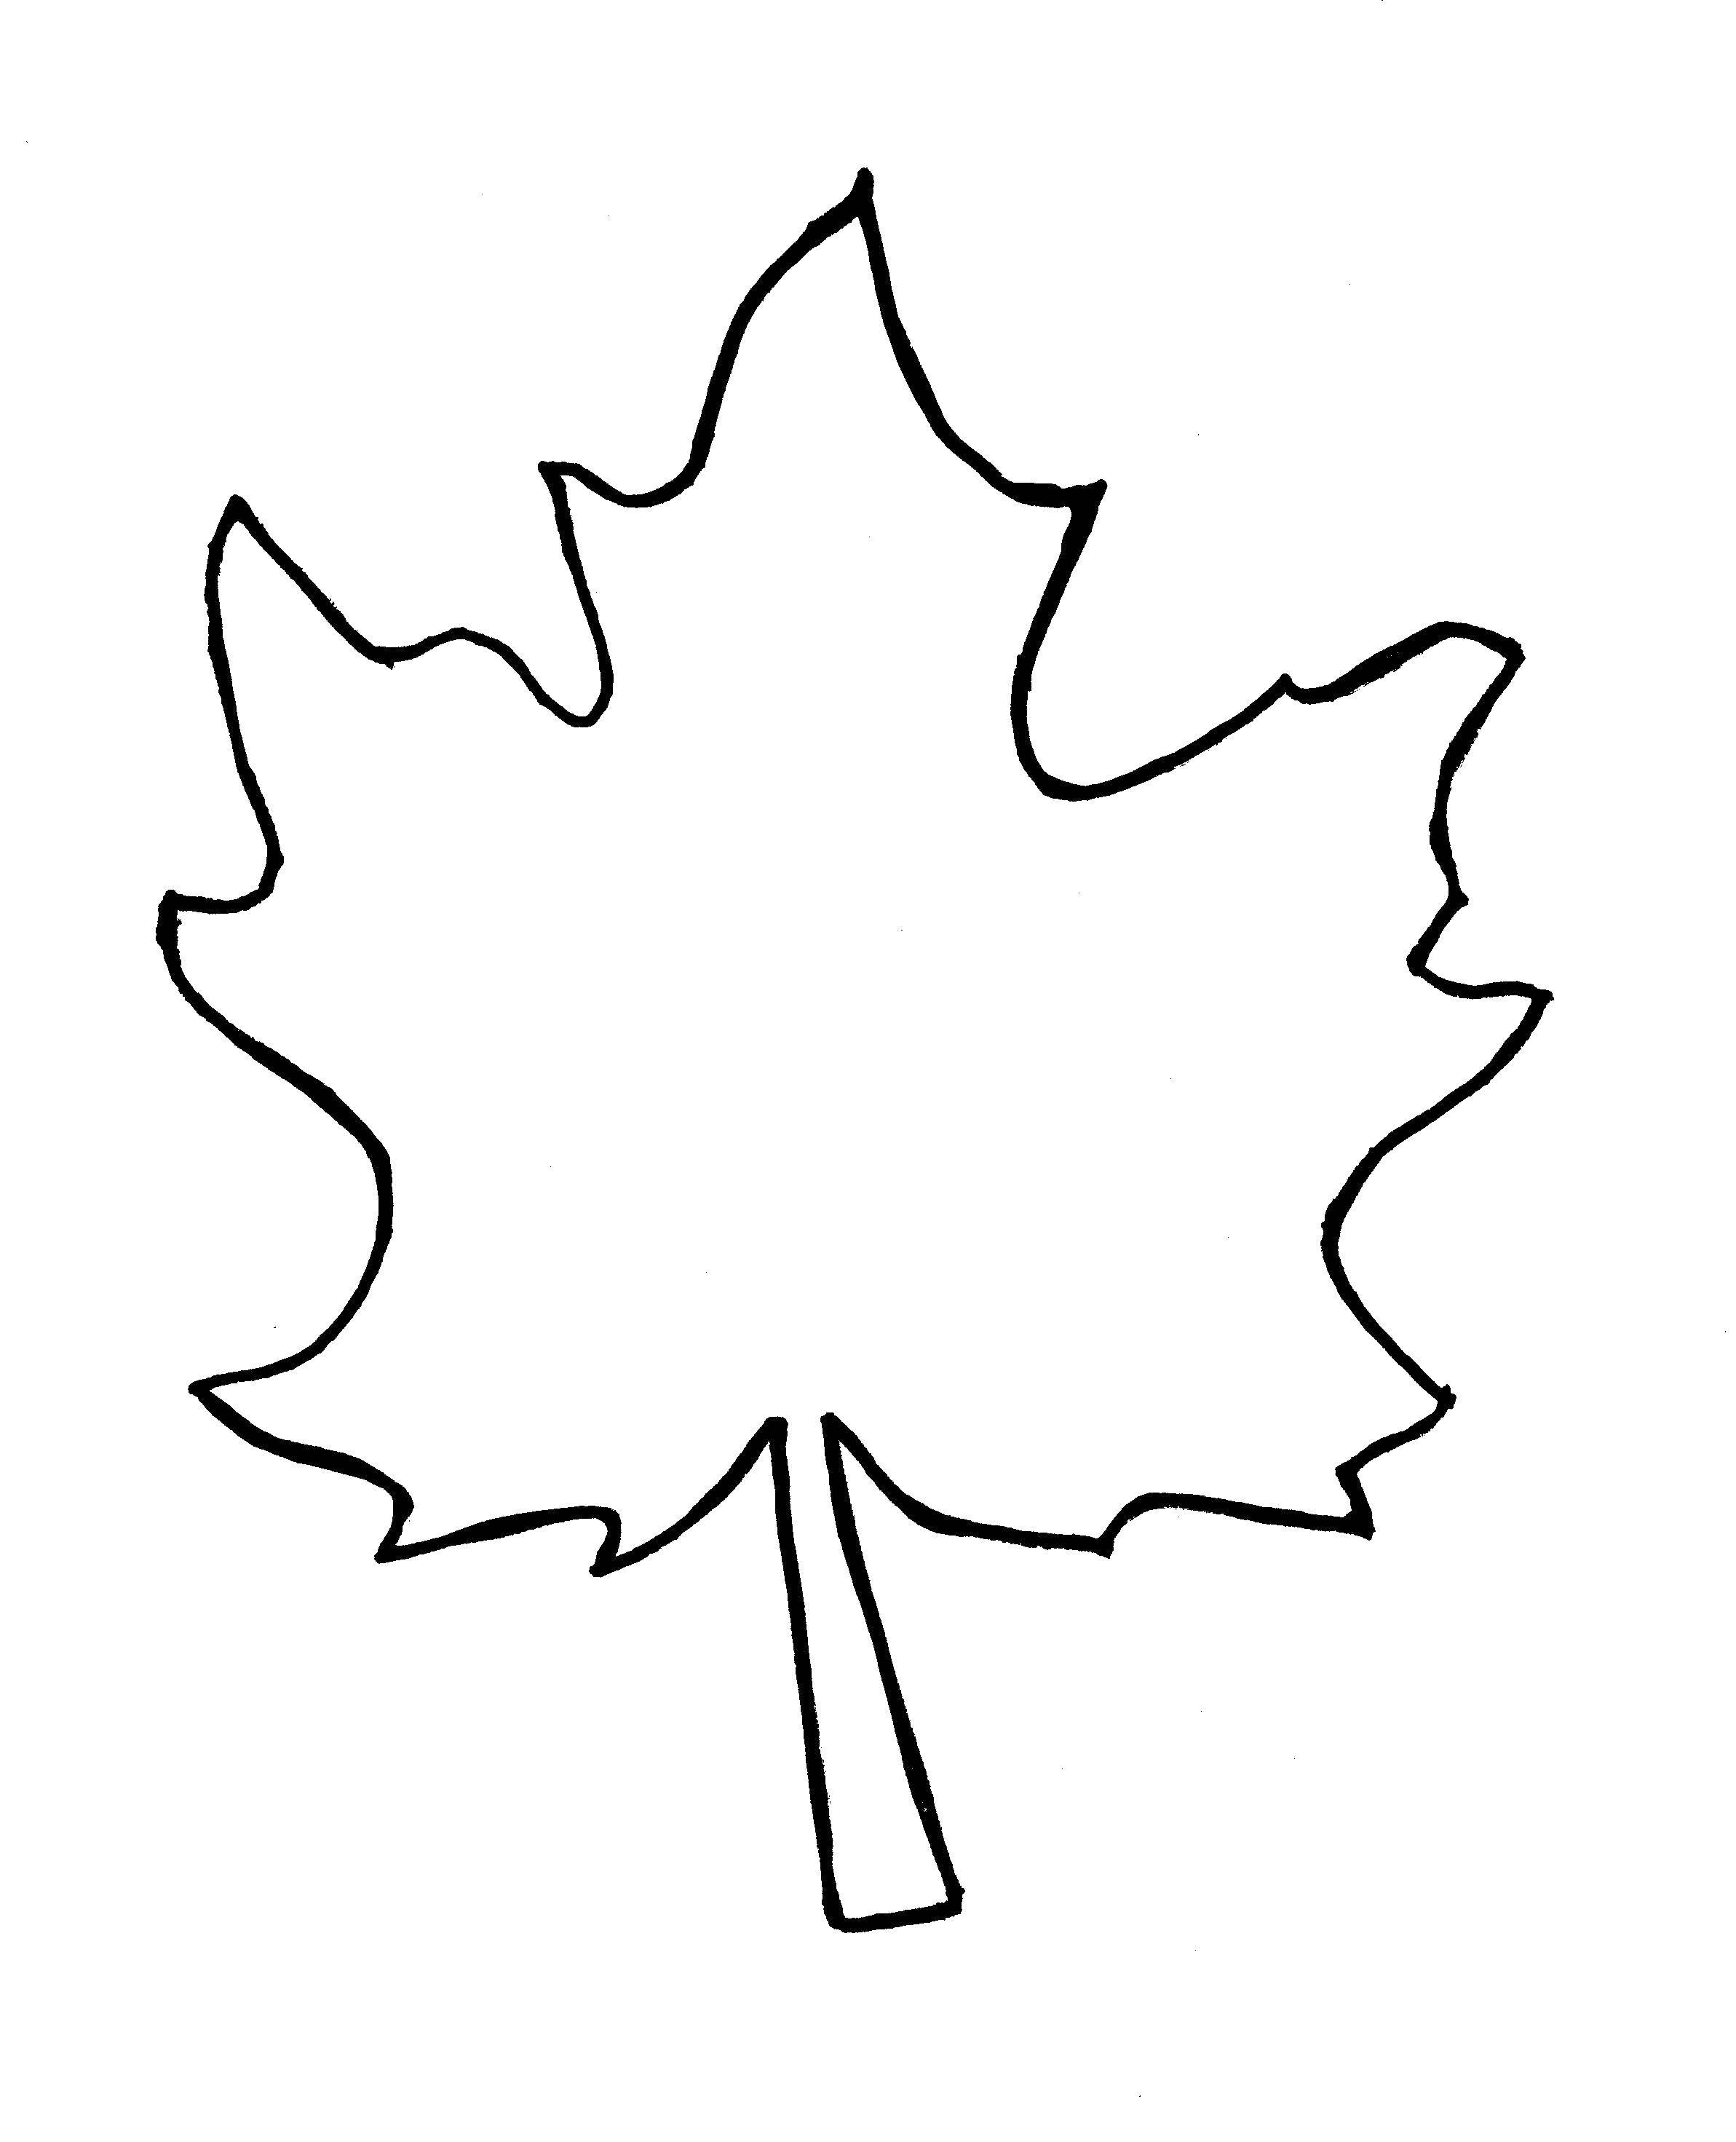 Название: Раскраска Лист. Категория: Контуры листьев деревьев. Теги: лист.